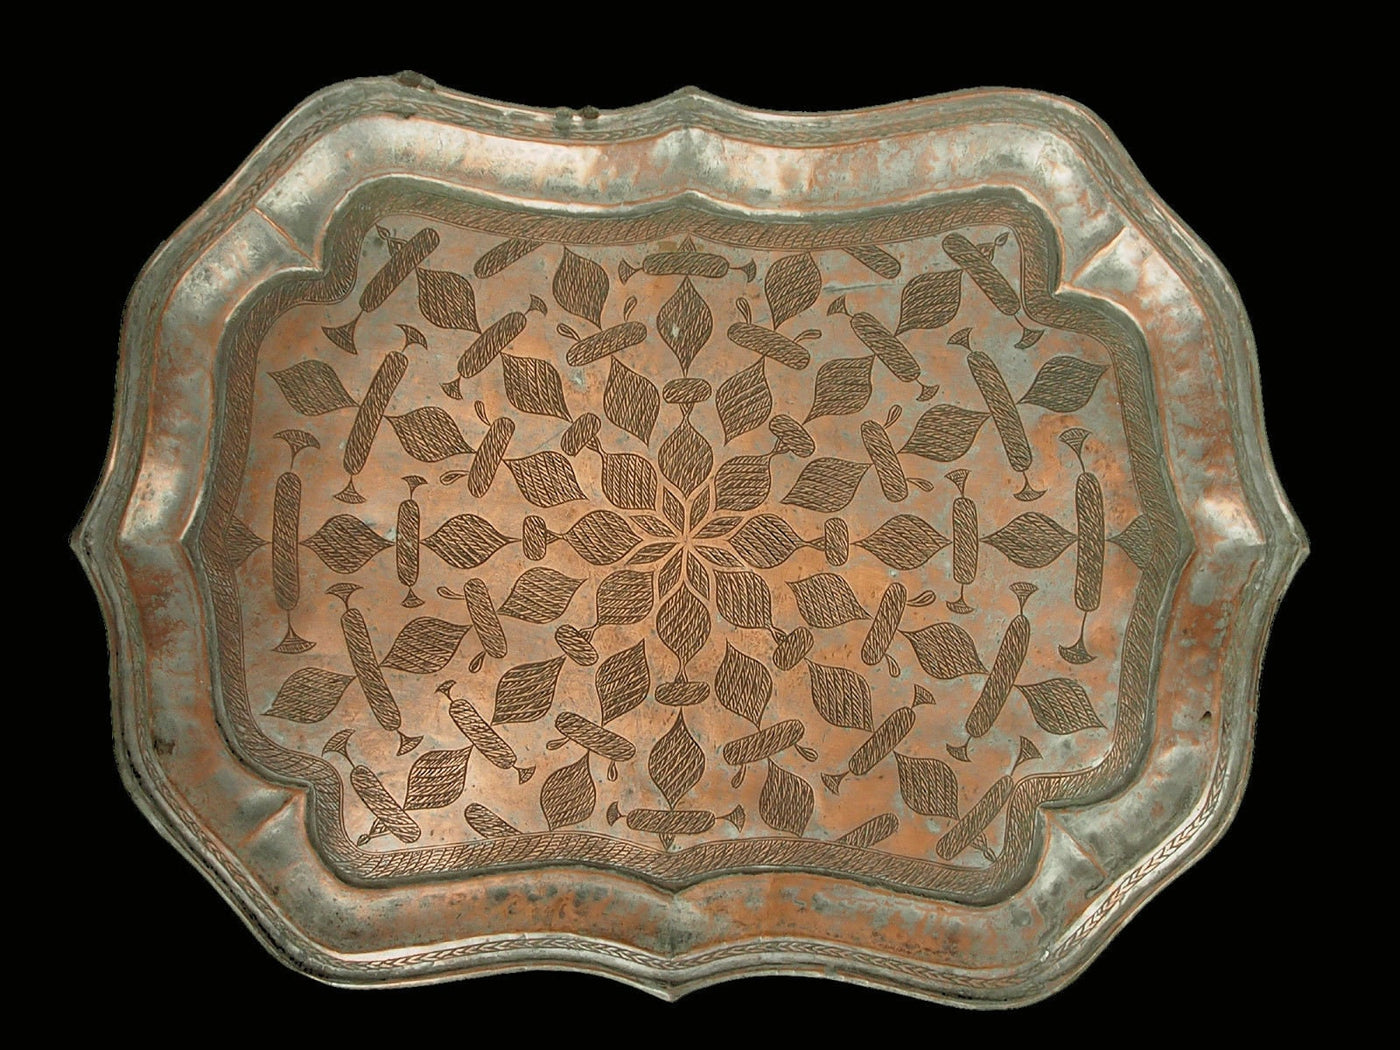 55x40 cm antik sehr seltener Massiv orientalische Kupfer tablett serviertablett Teetisch Afghanistan No:K30  Orientsbazar   